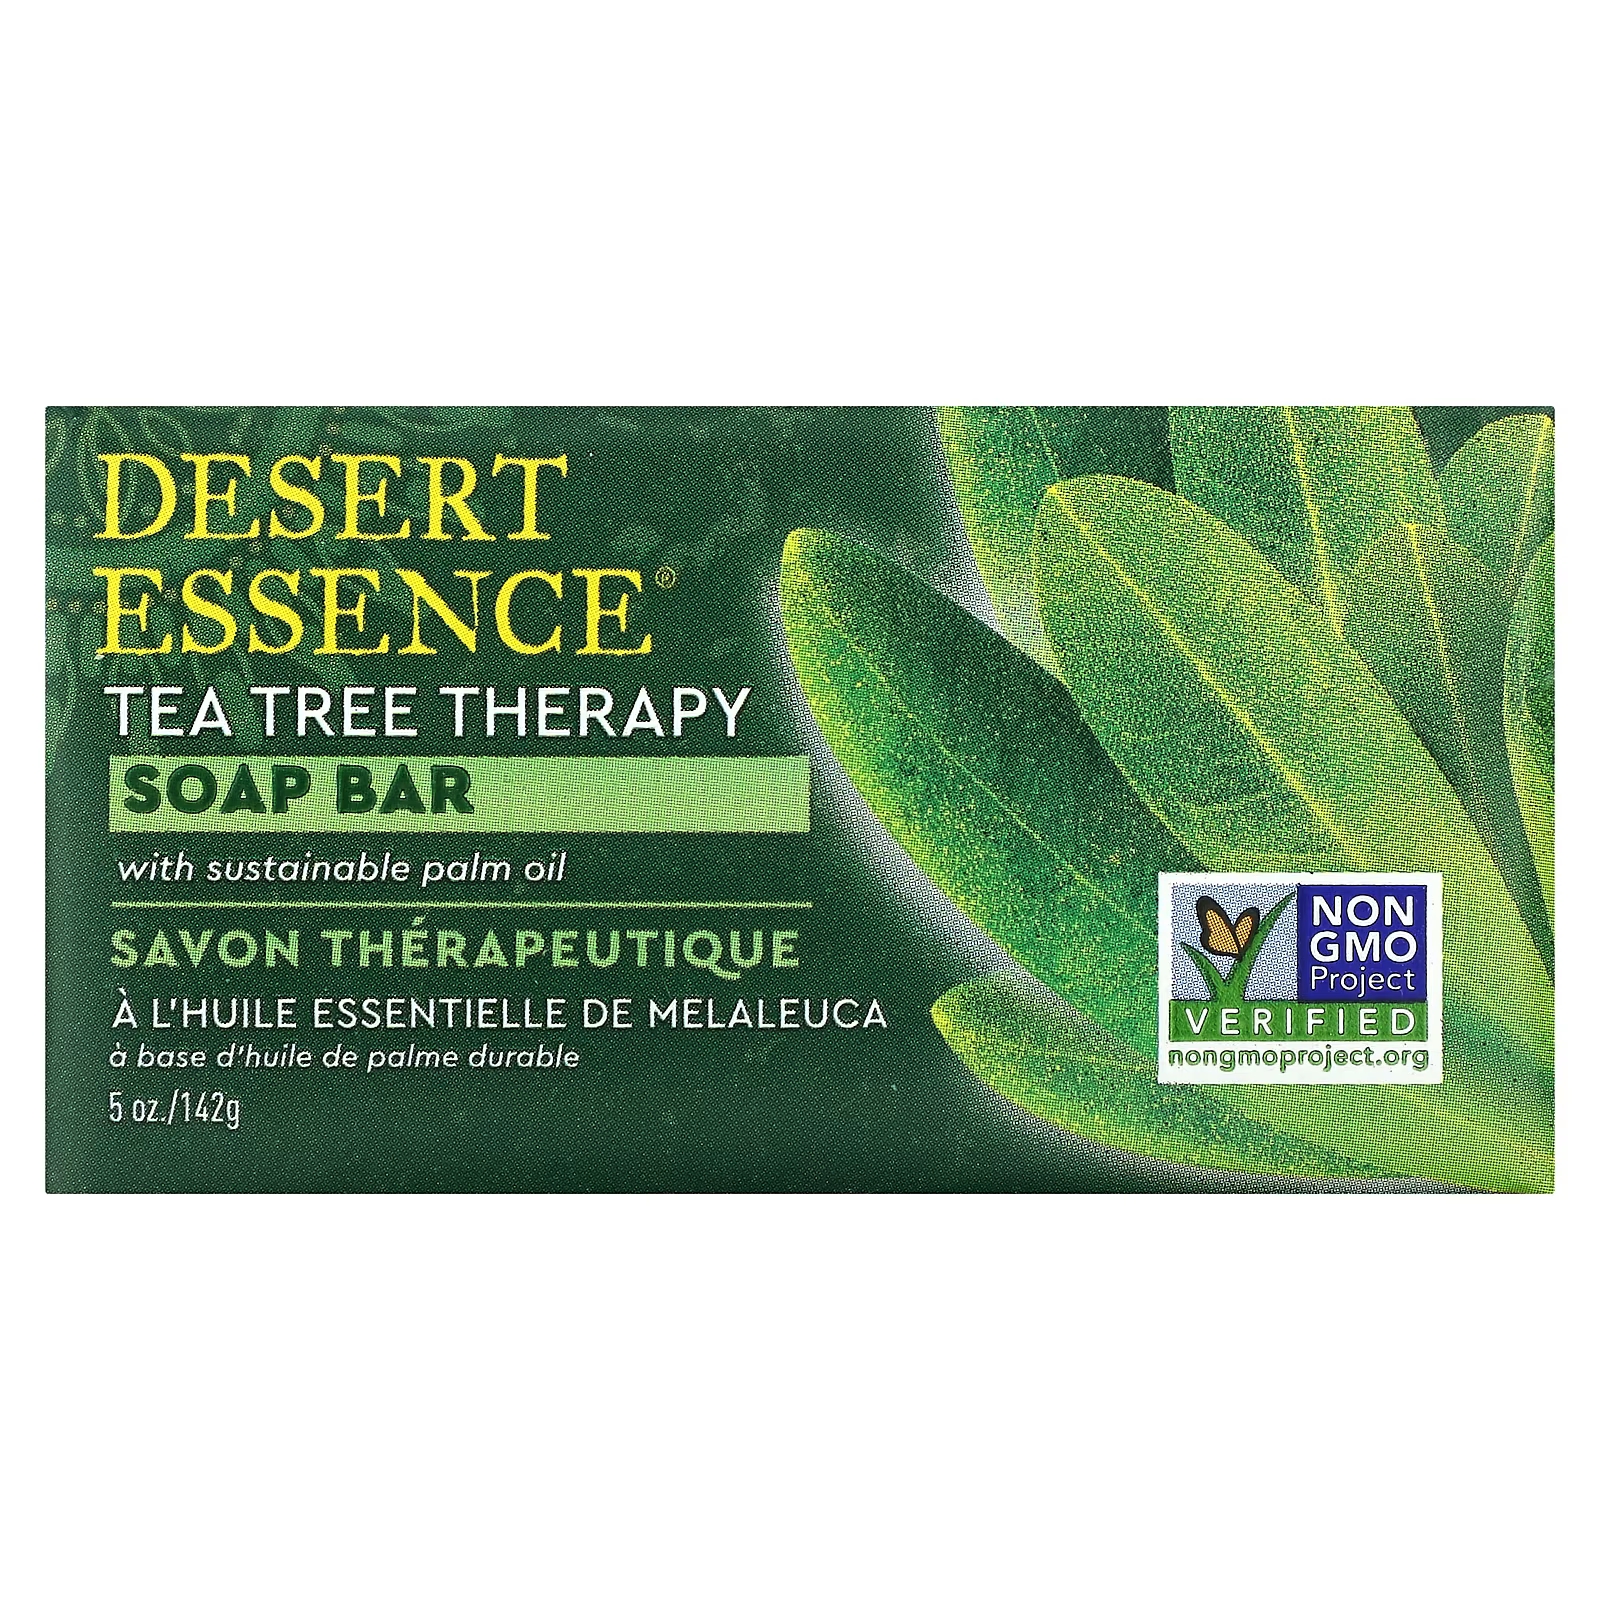 Мыло Tea Tree Therapy, 5 унций (142 г) Desert Essence мыло tea tree therapy 5 унций 142 г desert essence